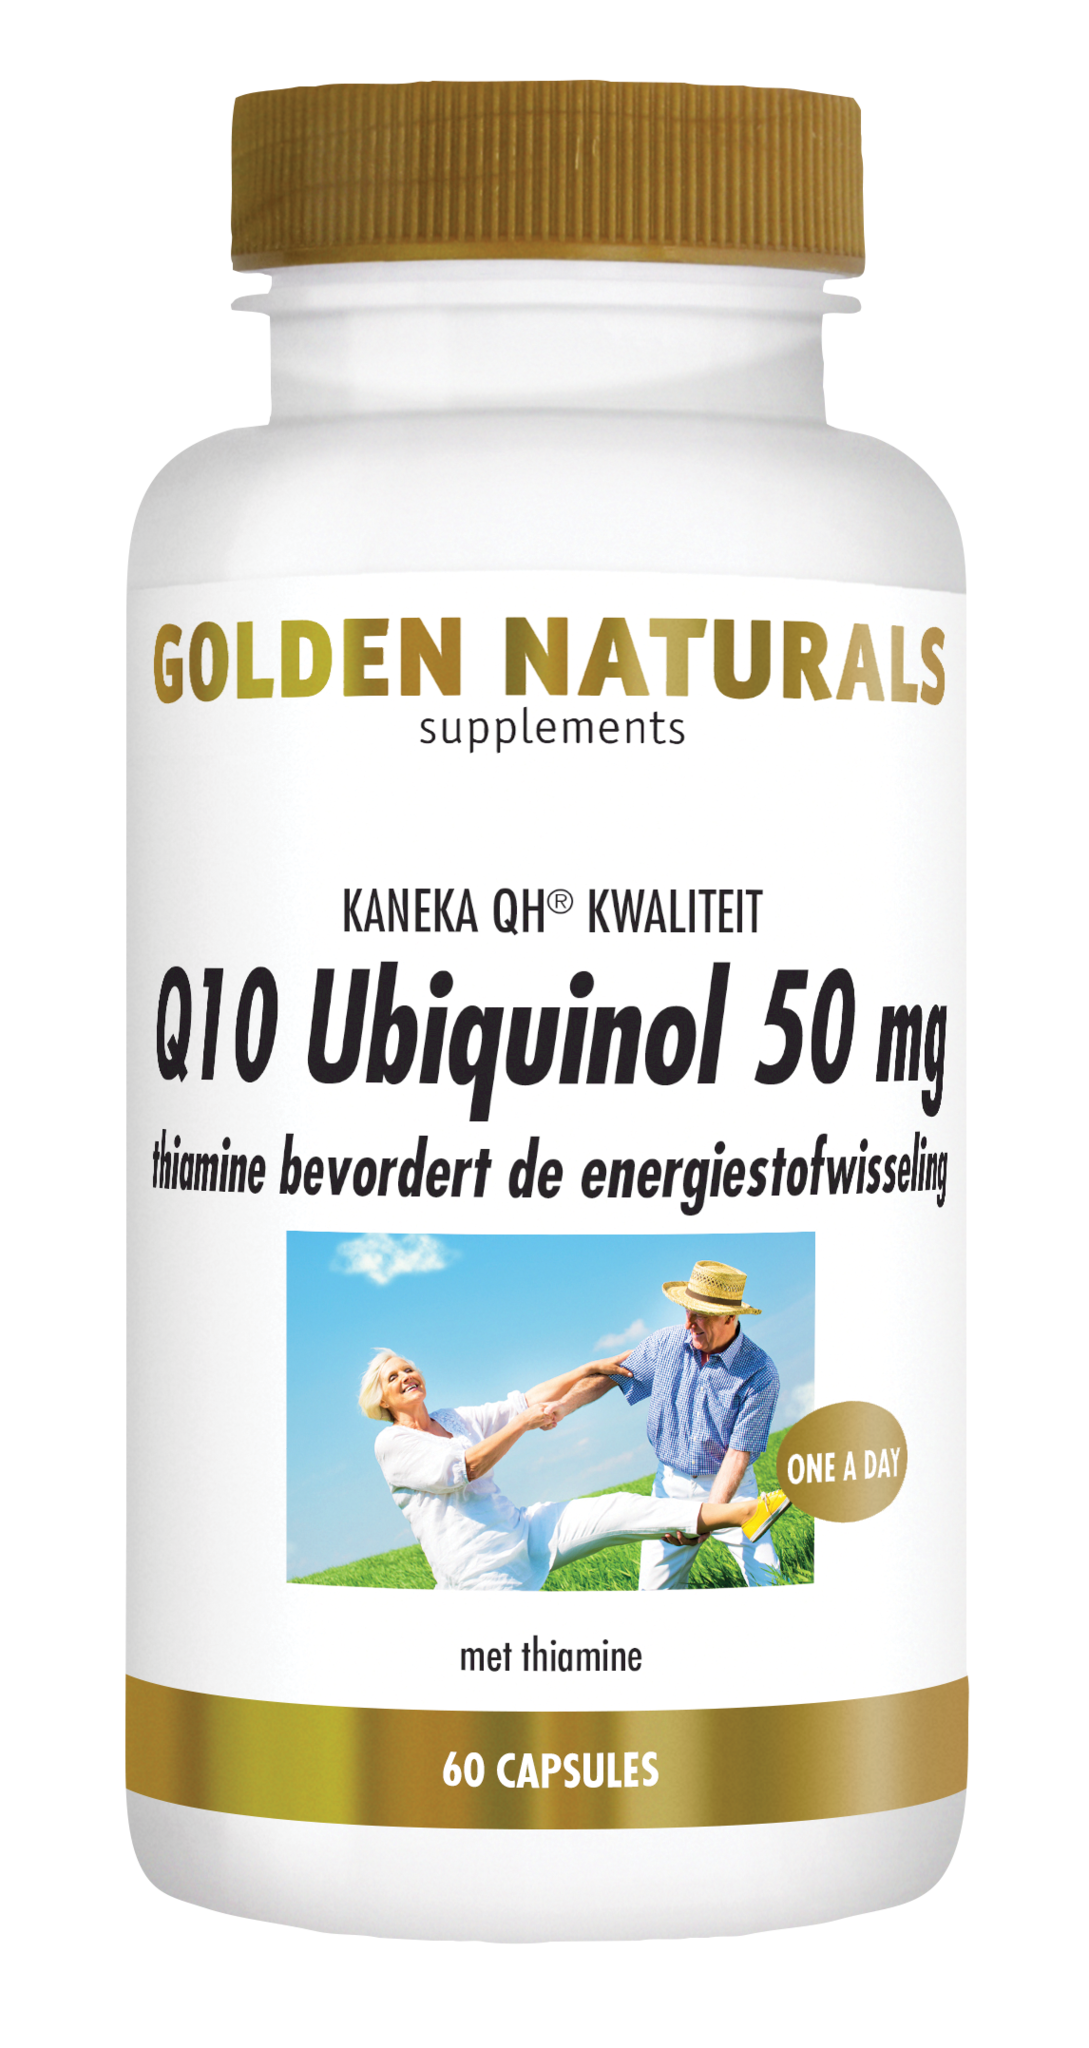 Golden Naturals Golden Naturals Q10 Ubiquinol 50 mg (60 vegetarische Kapseln)